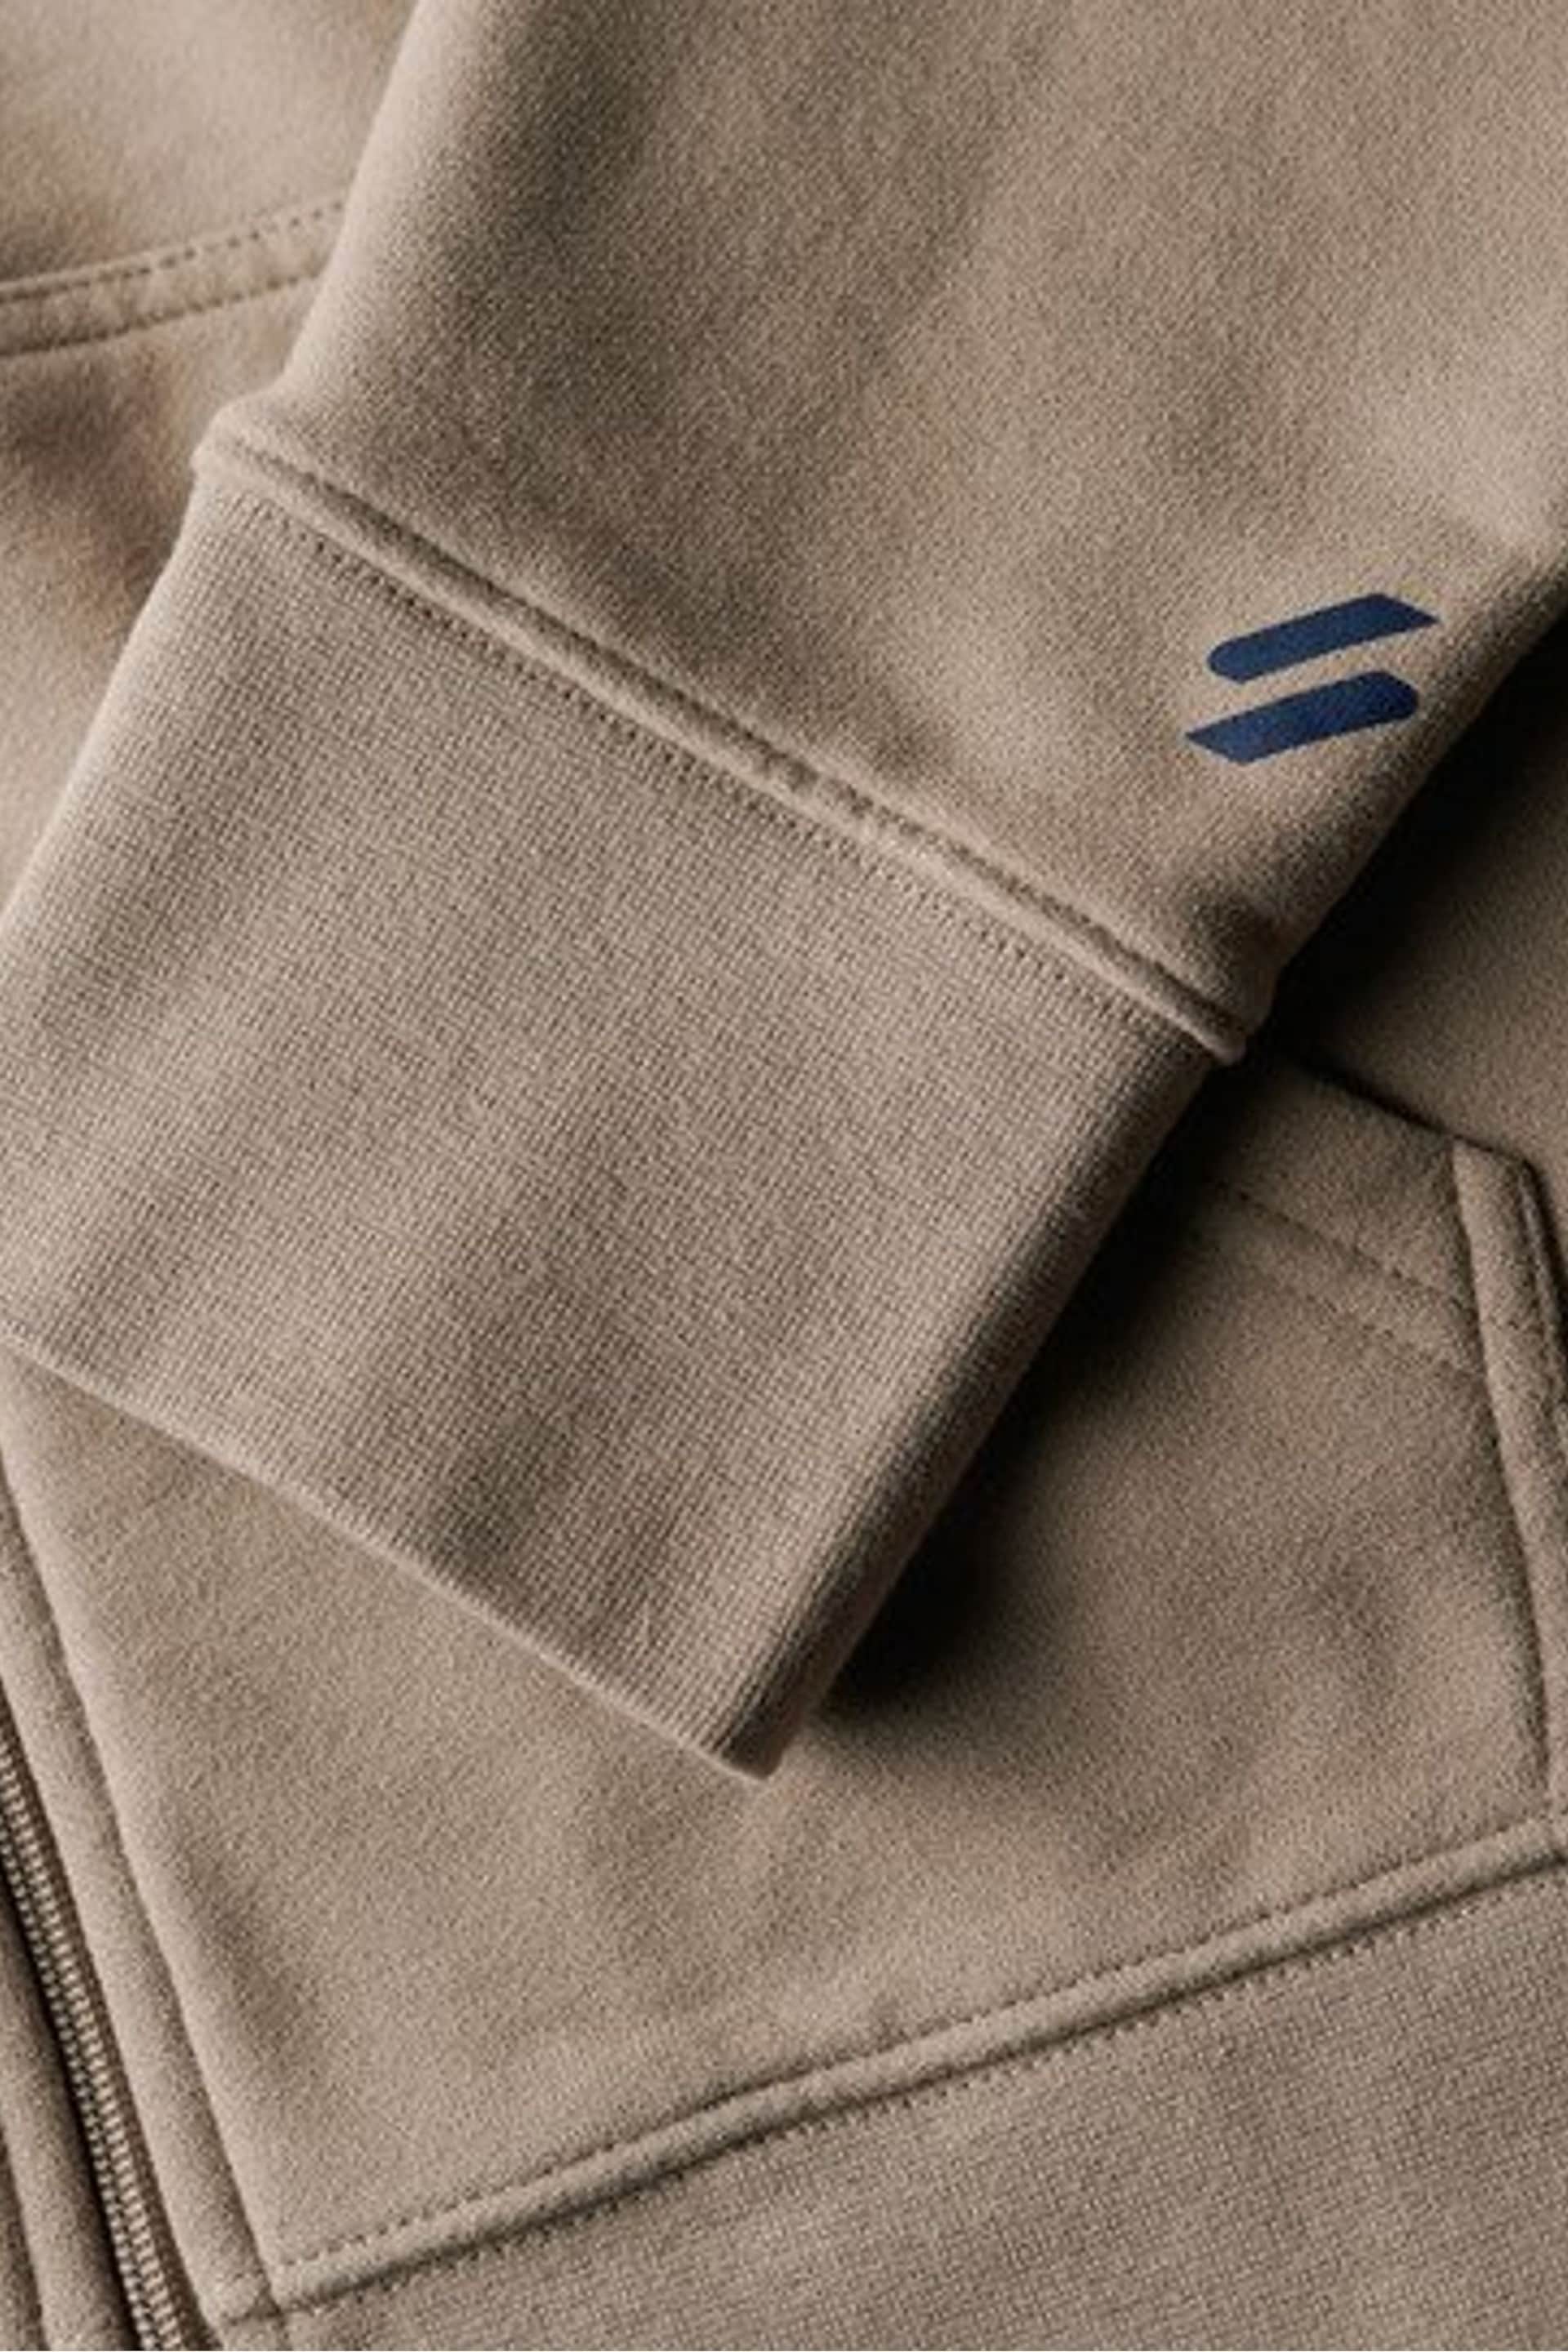 Superdry Brown Sportswear Logo Loose Zip Hoodie - Image 6 of 6